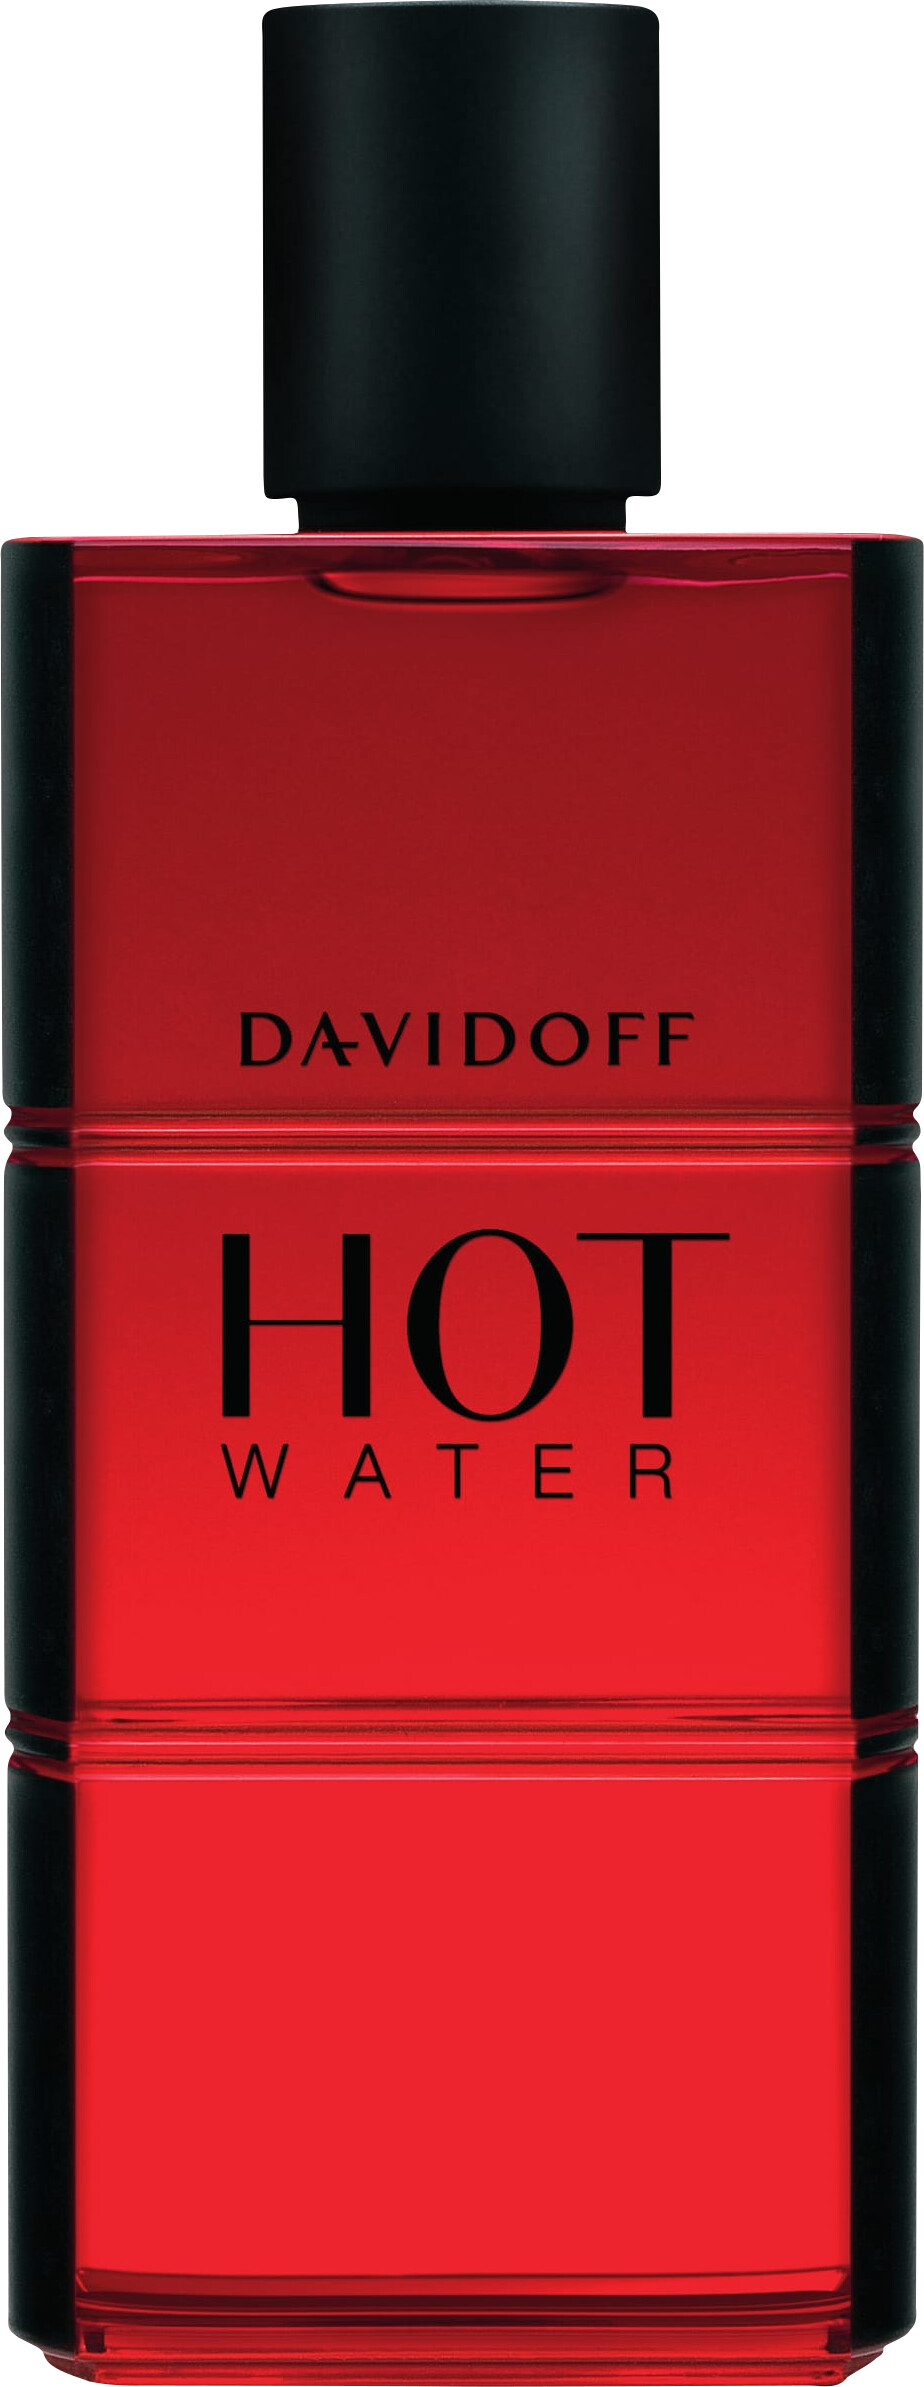 Davidoff Hot Water Eau de Toilette Spray 110ml